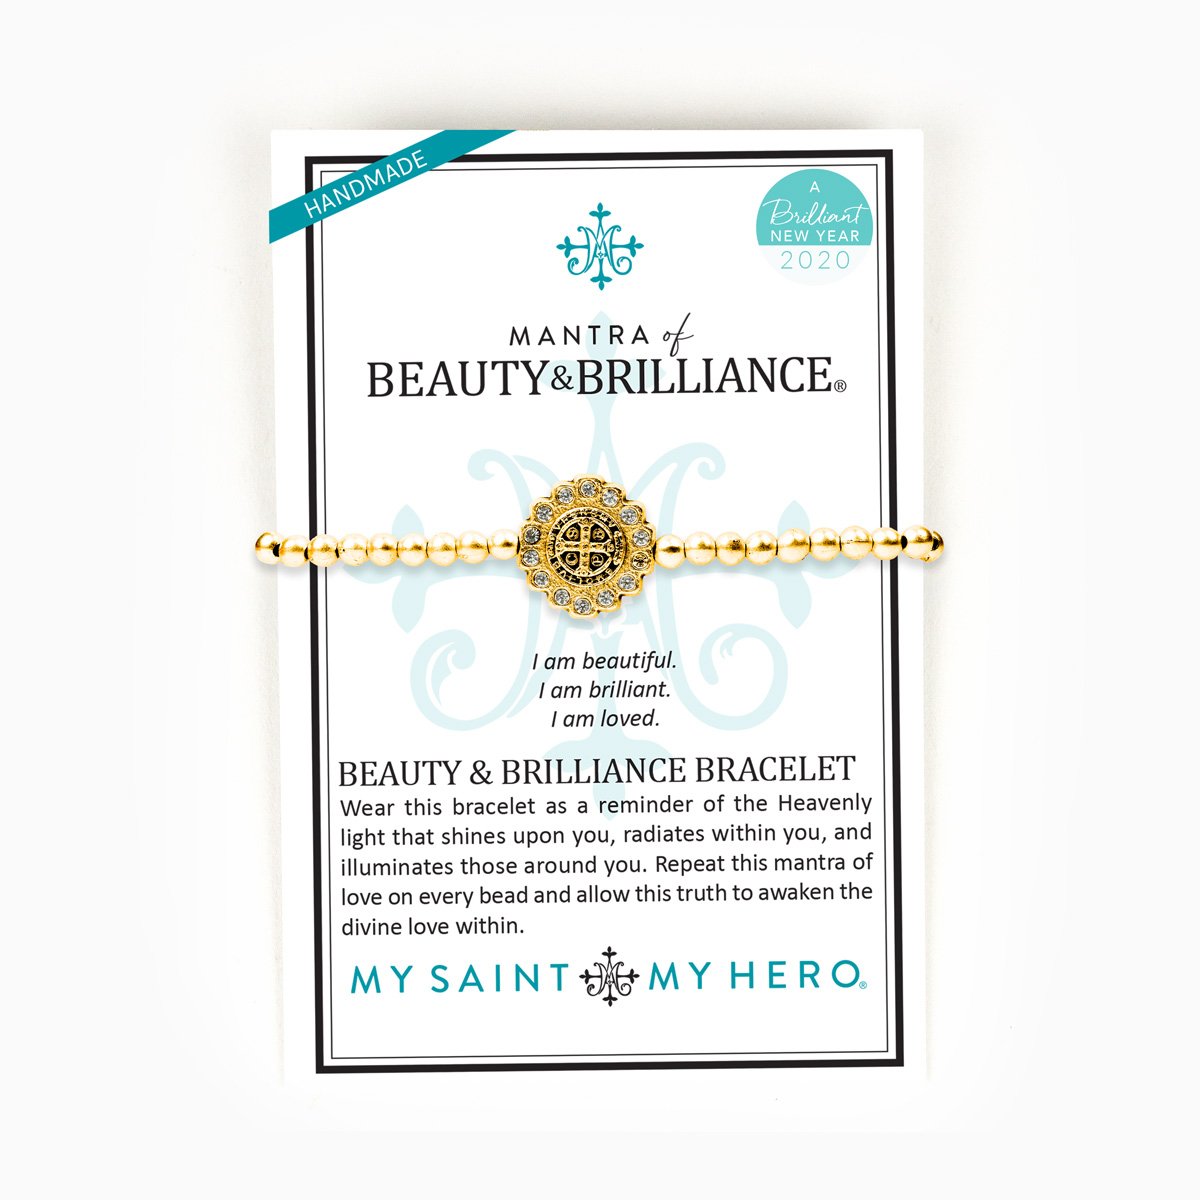 Mantra of Beauty & Brilliance Bracelet